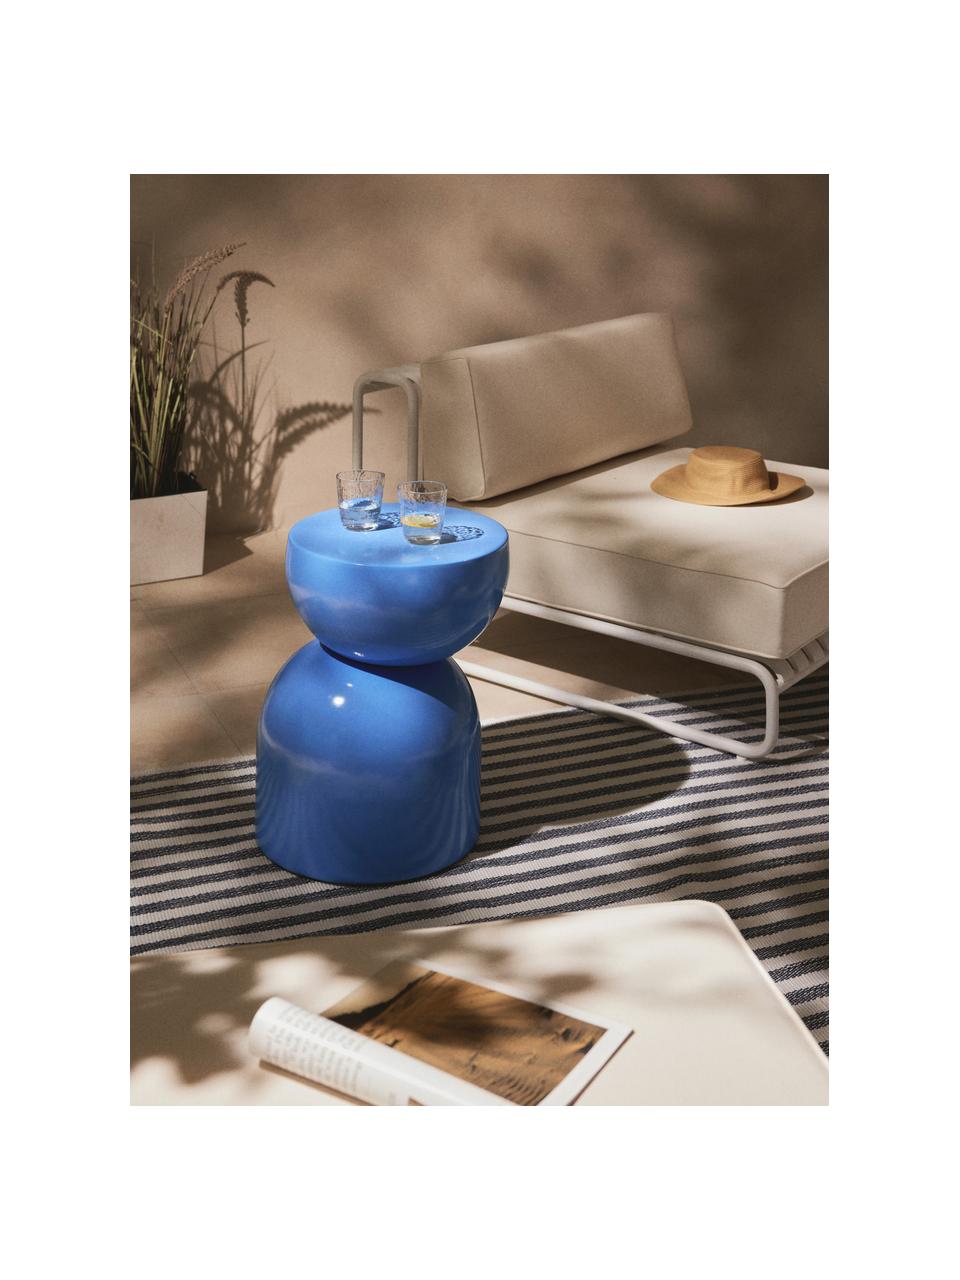 Wewnętrzny/zewnętrzny stolik pomocniczy Gigi, Tworzywo sztuczne, metal malowany proszkowo, Niebieski, S 45 x W 55 cm